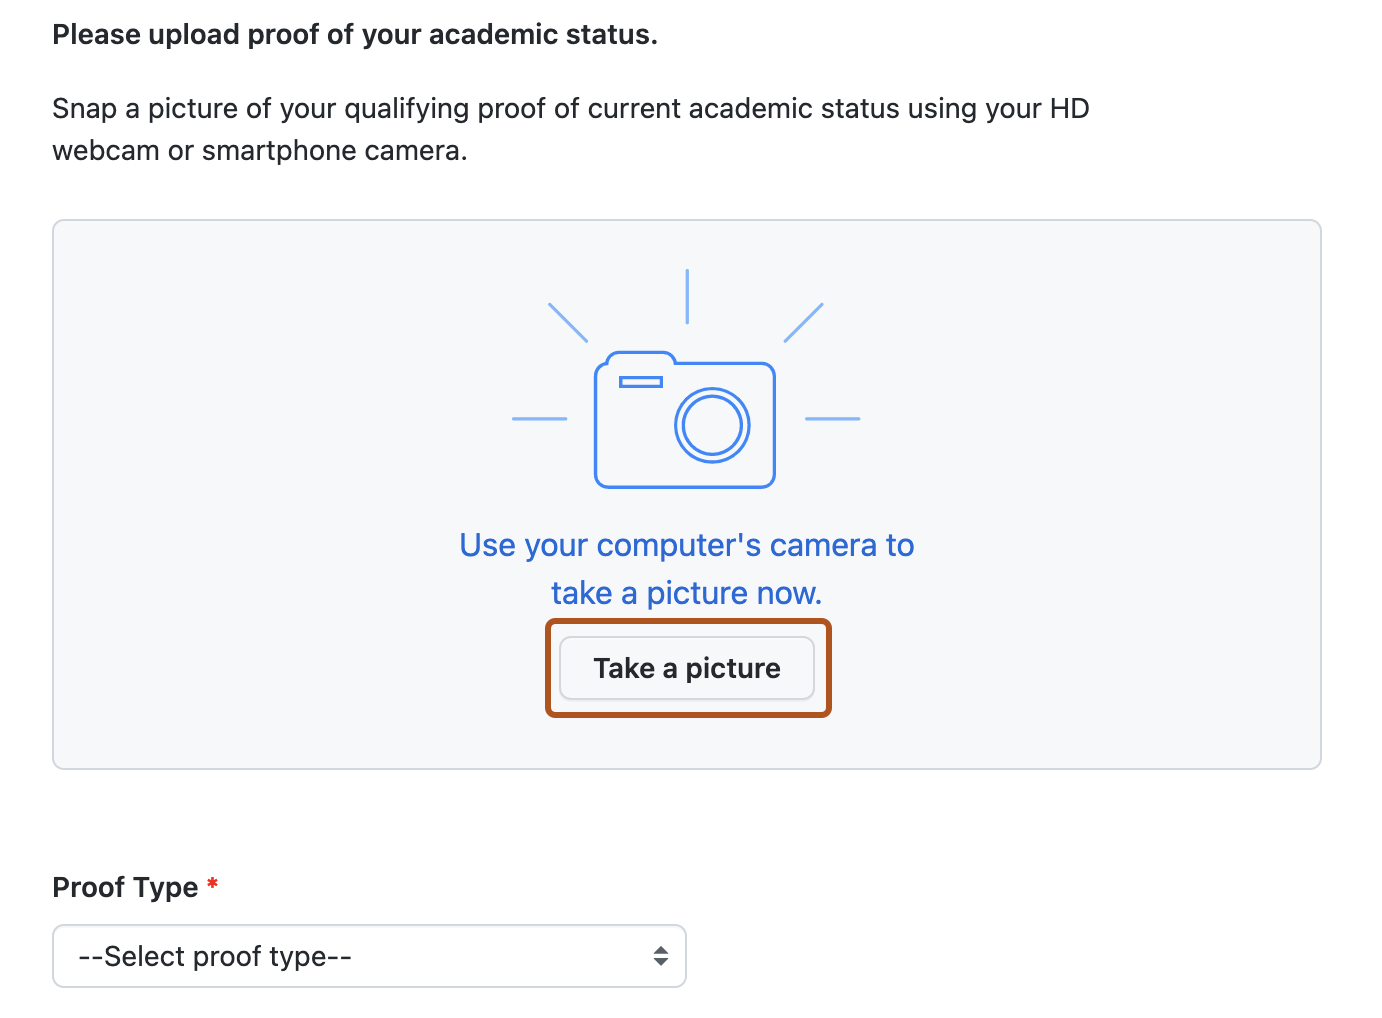 教育機関の状態の写真証明を提供するためのページのスクリーンショット。 [写真を撮る] ボタンが濃いオレンジ色の枠線で囲まれています。